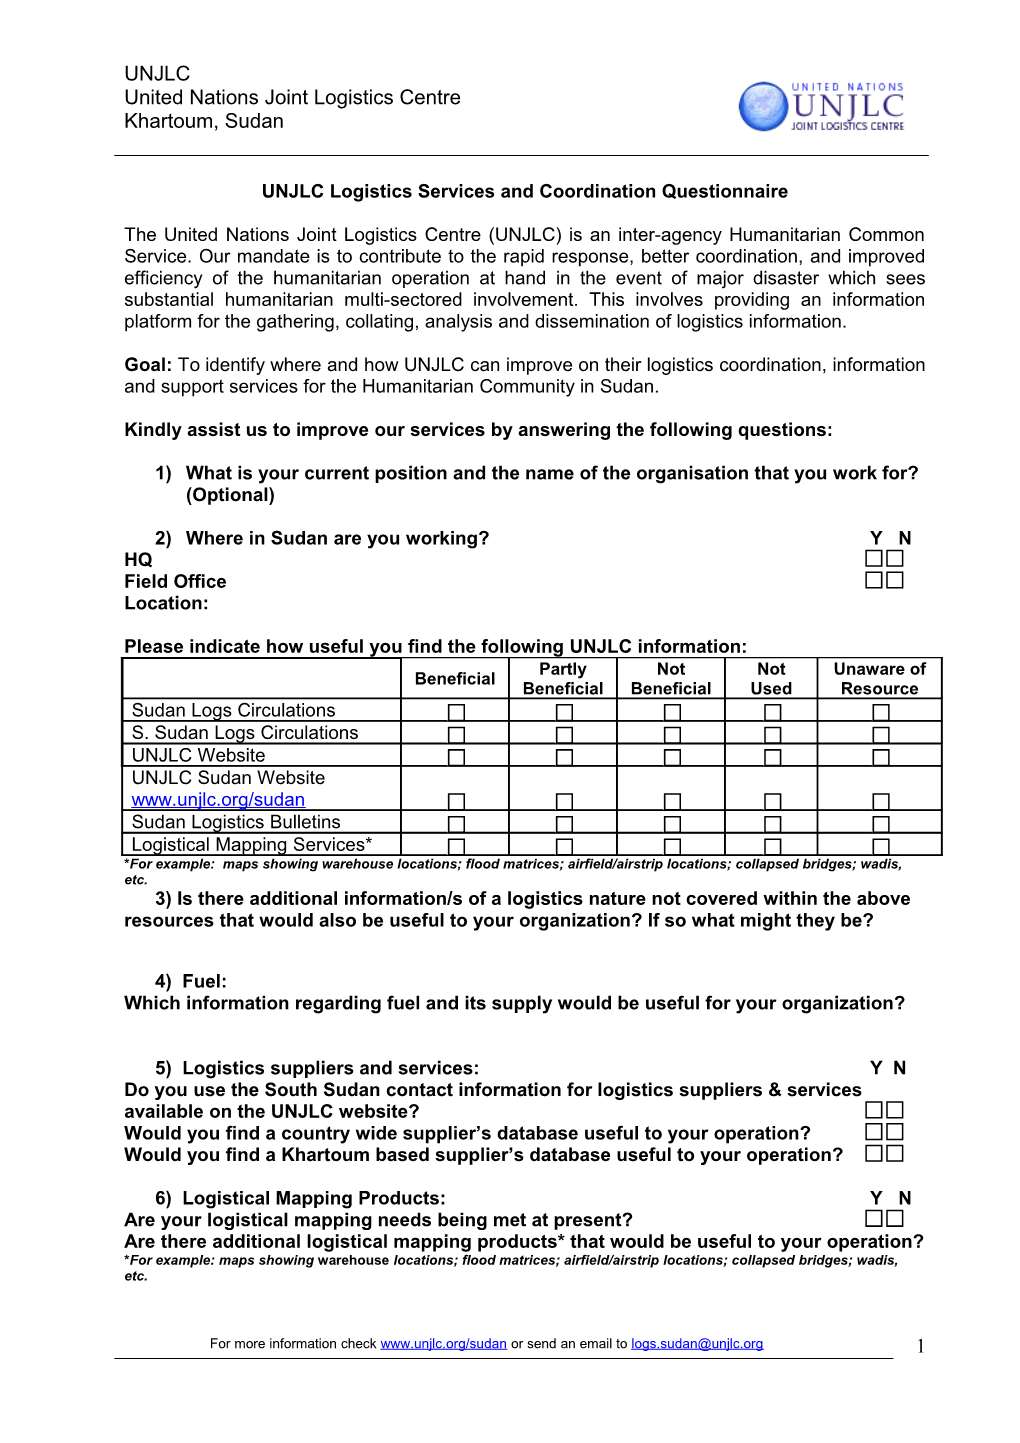 UNJLC Logistics Services and Coordination Questionnaire